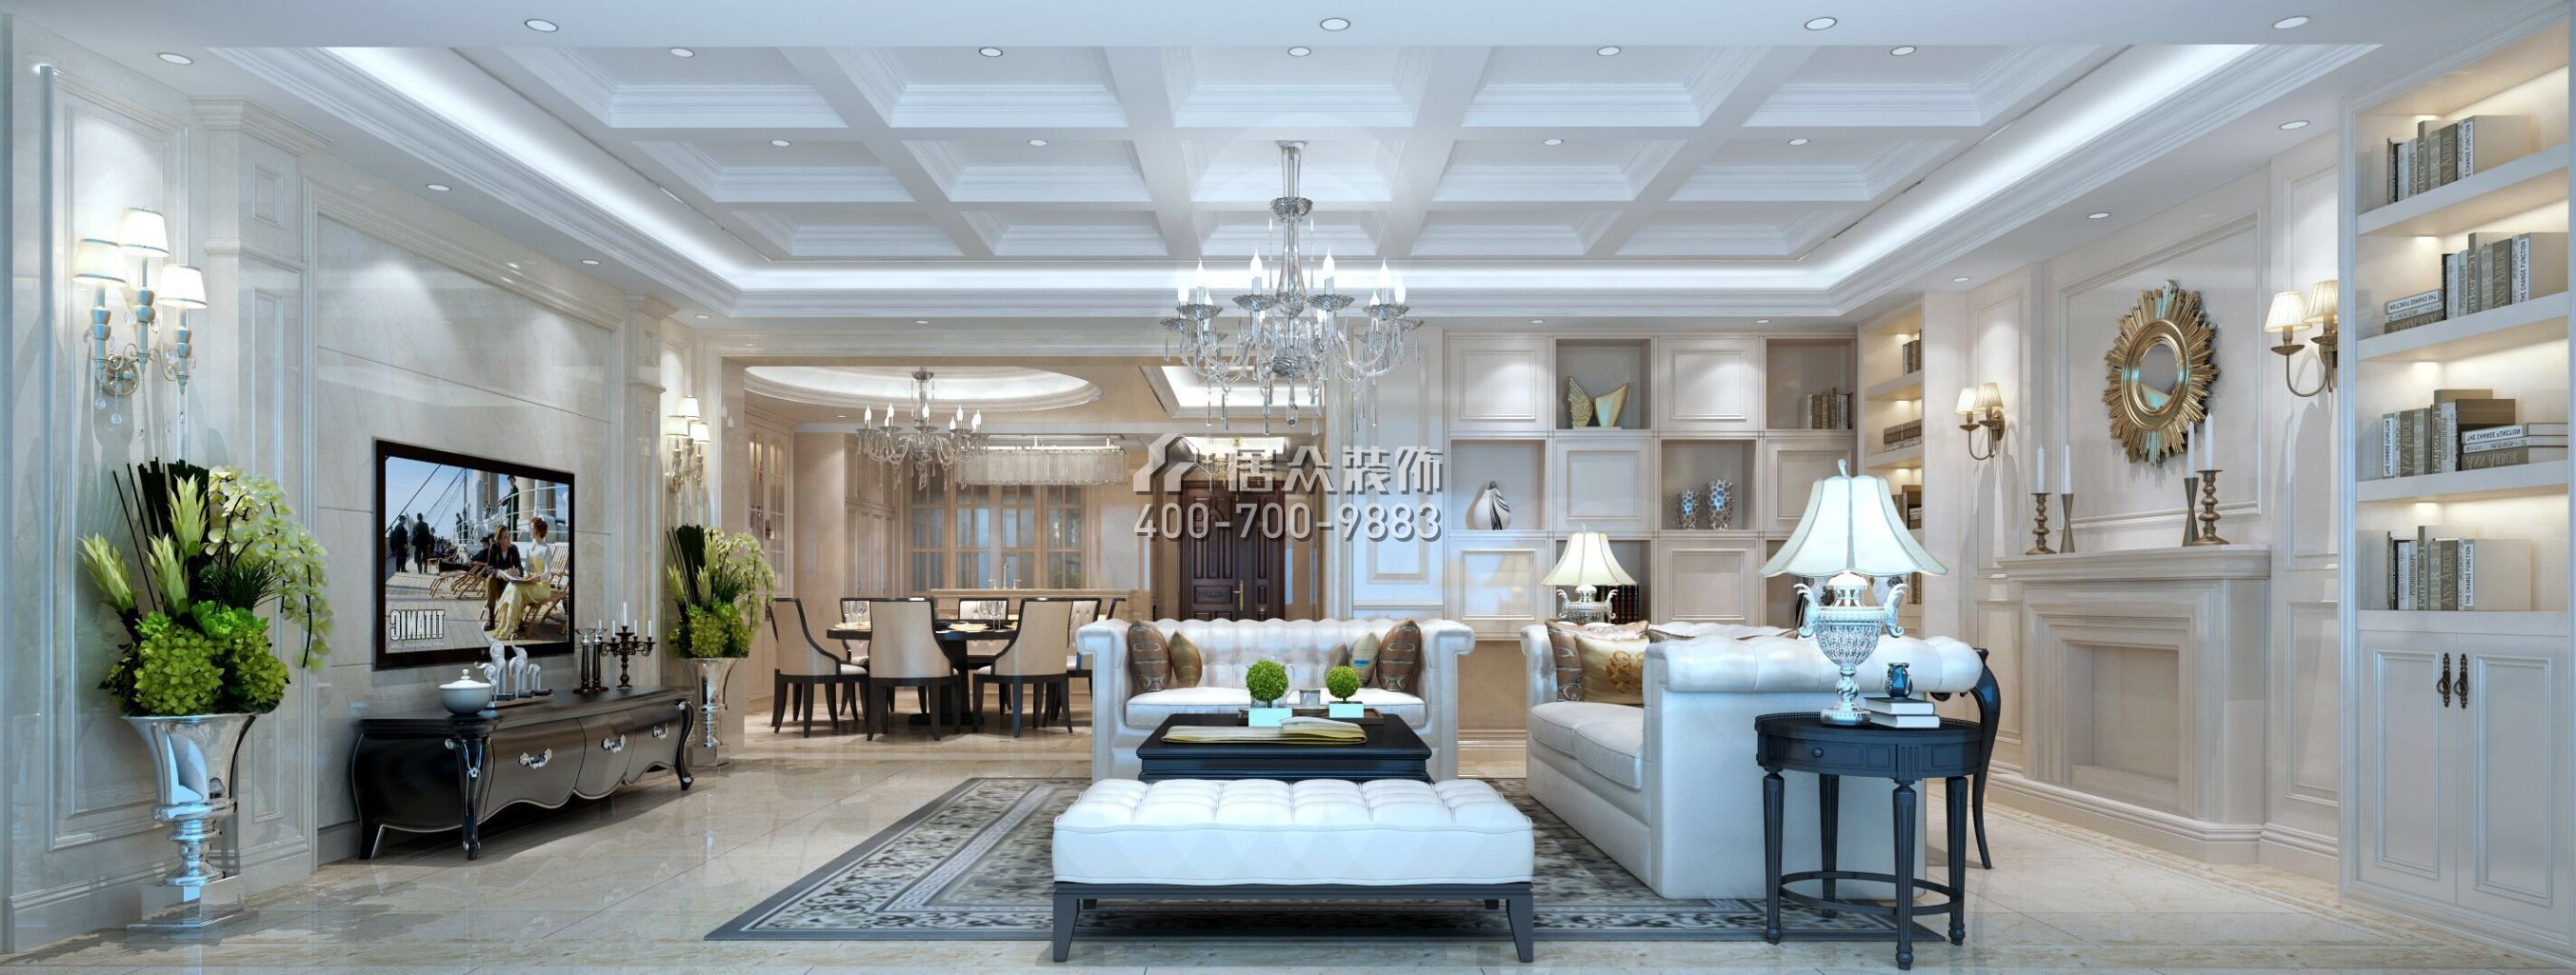 東部華僑城天麓300平方米美式風格別墅戶型客廳裝修效果圖